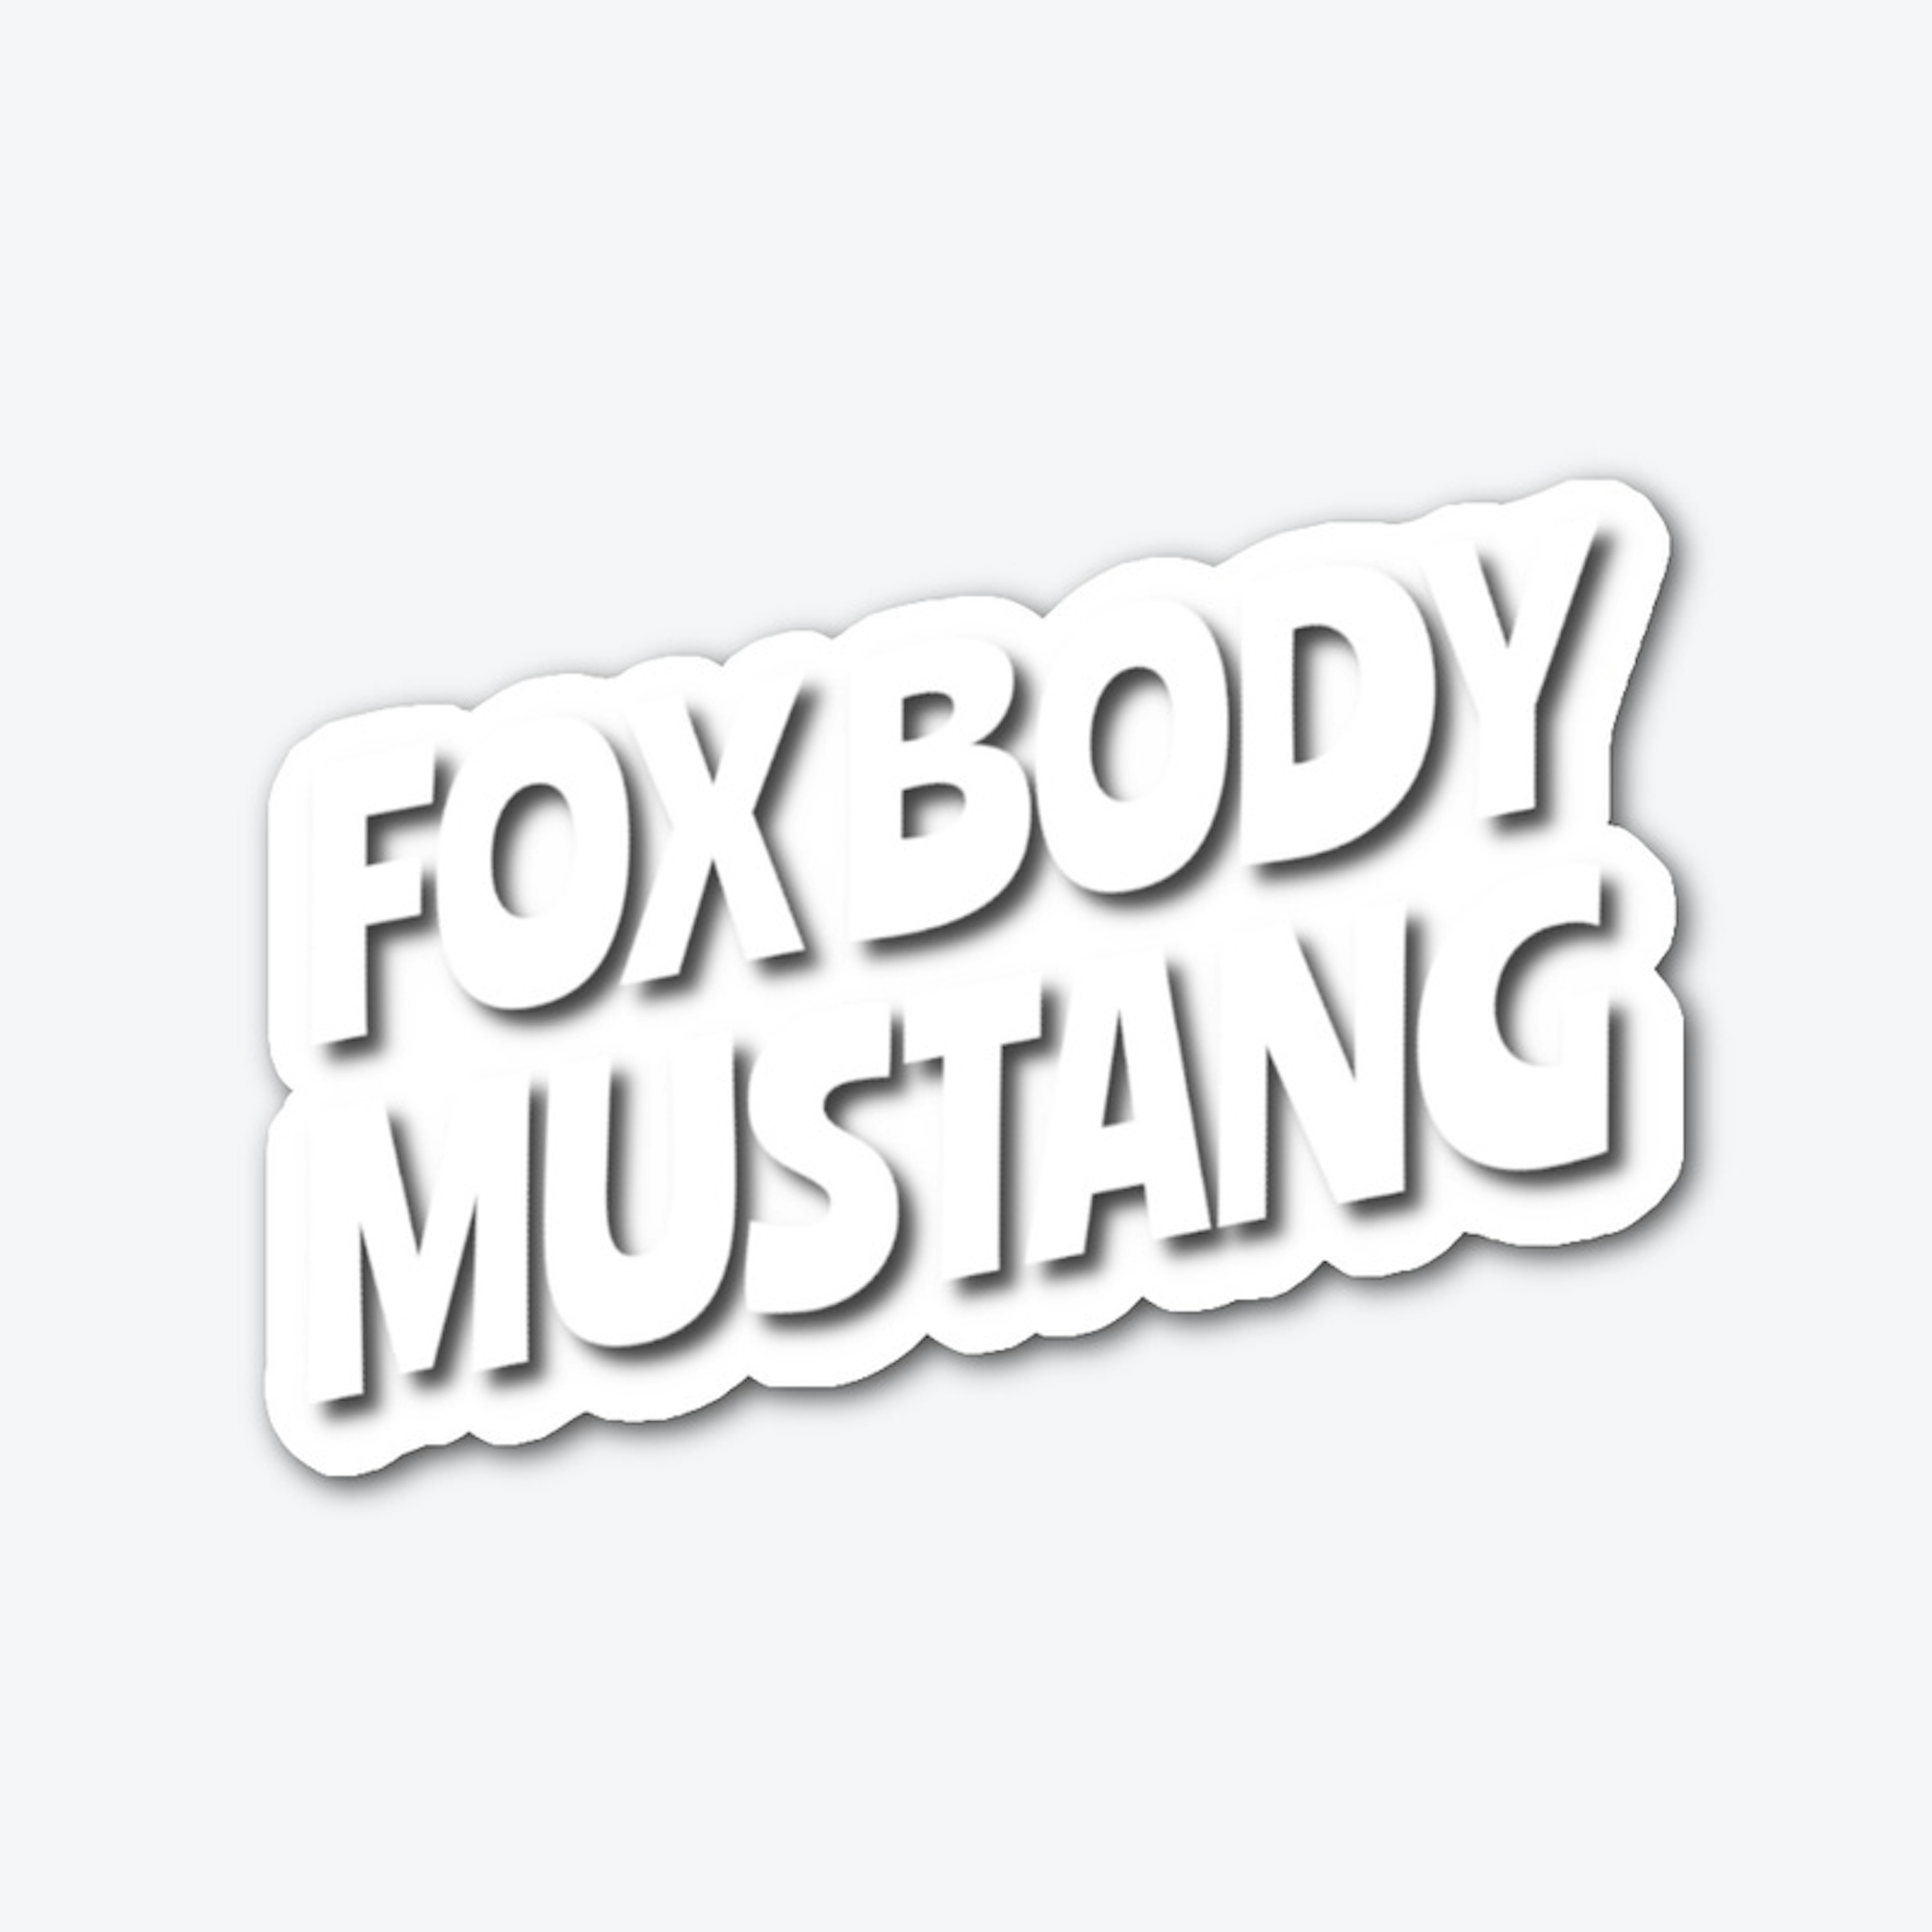 Fox Body Mustang Dominate